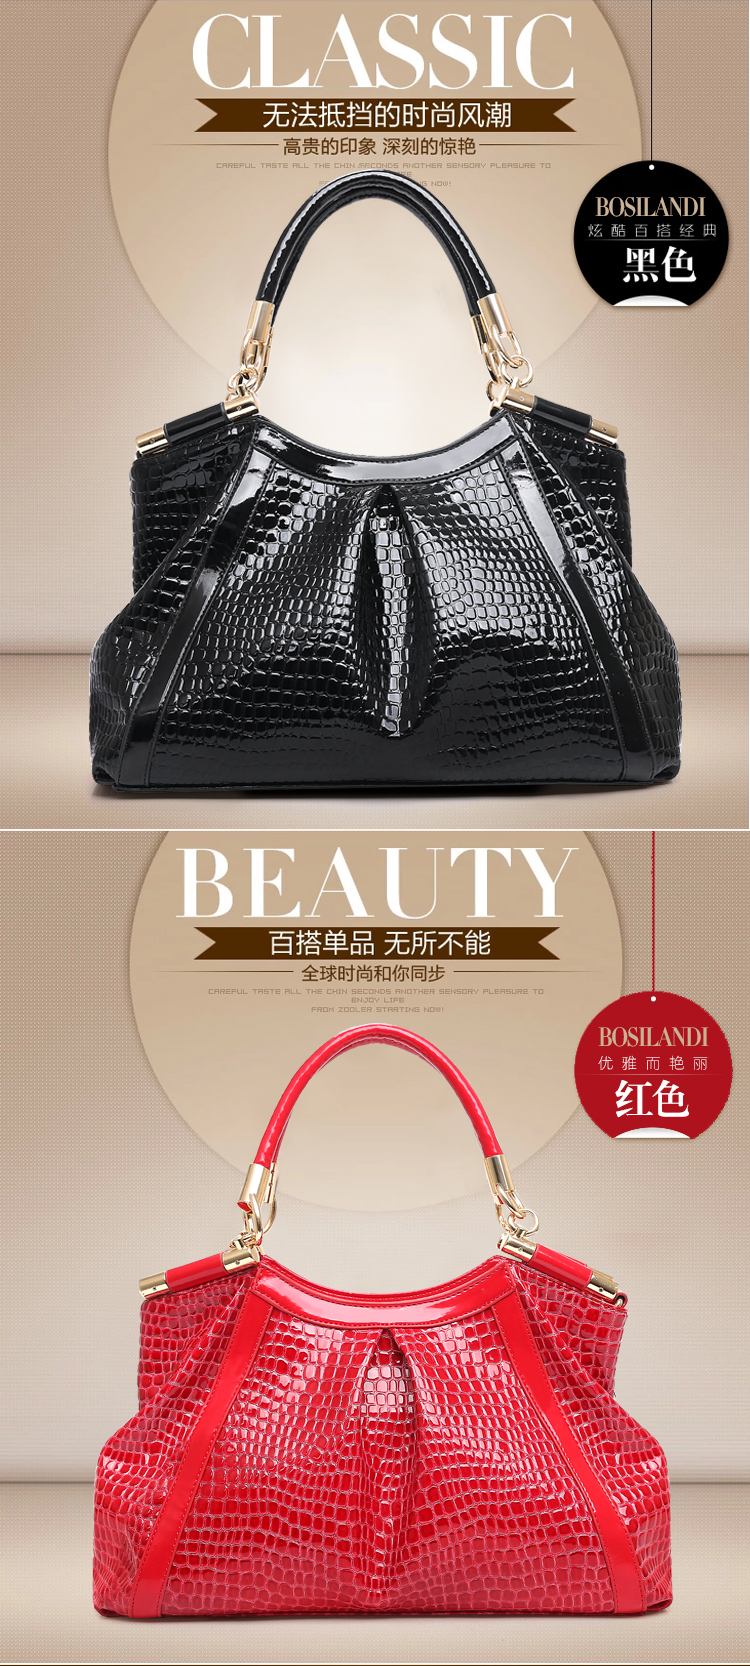 2015 Fashion Women Hobo Bag Alibaba China - Buy Hobo Bag,Lady Handbag,Women Handbag Product on ...